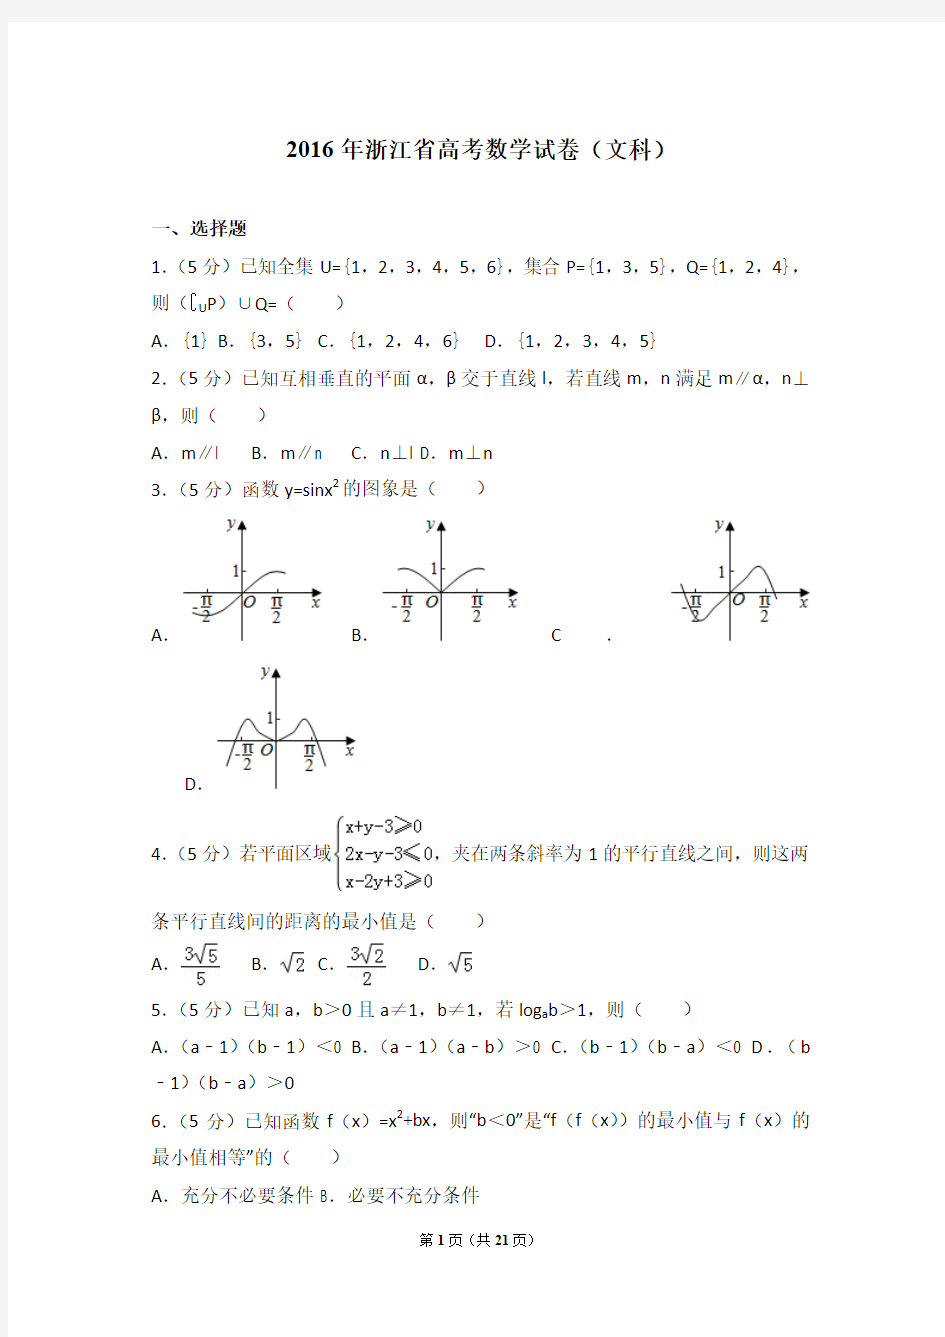 2016年浙江省高考数学试卷(文科)(含详细答案解析)